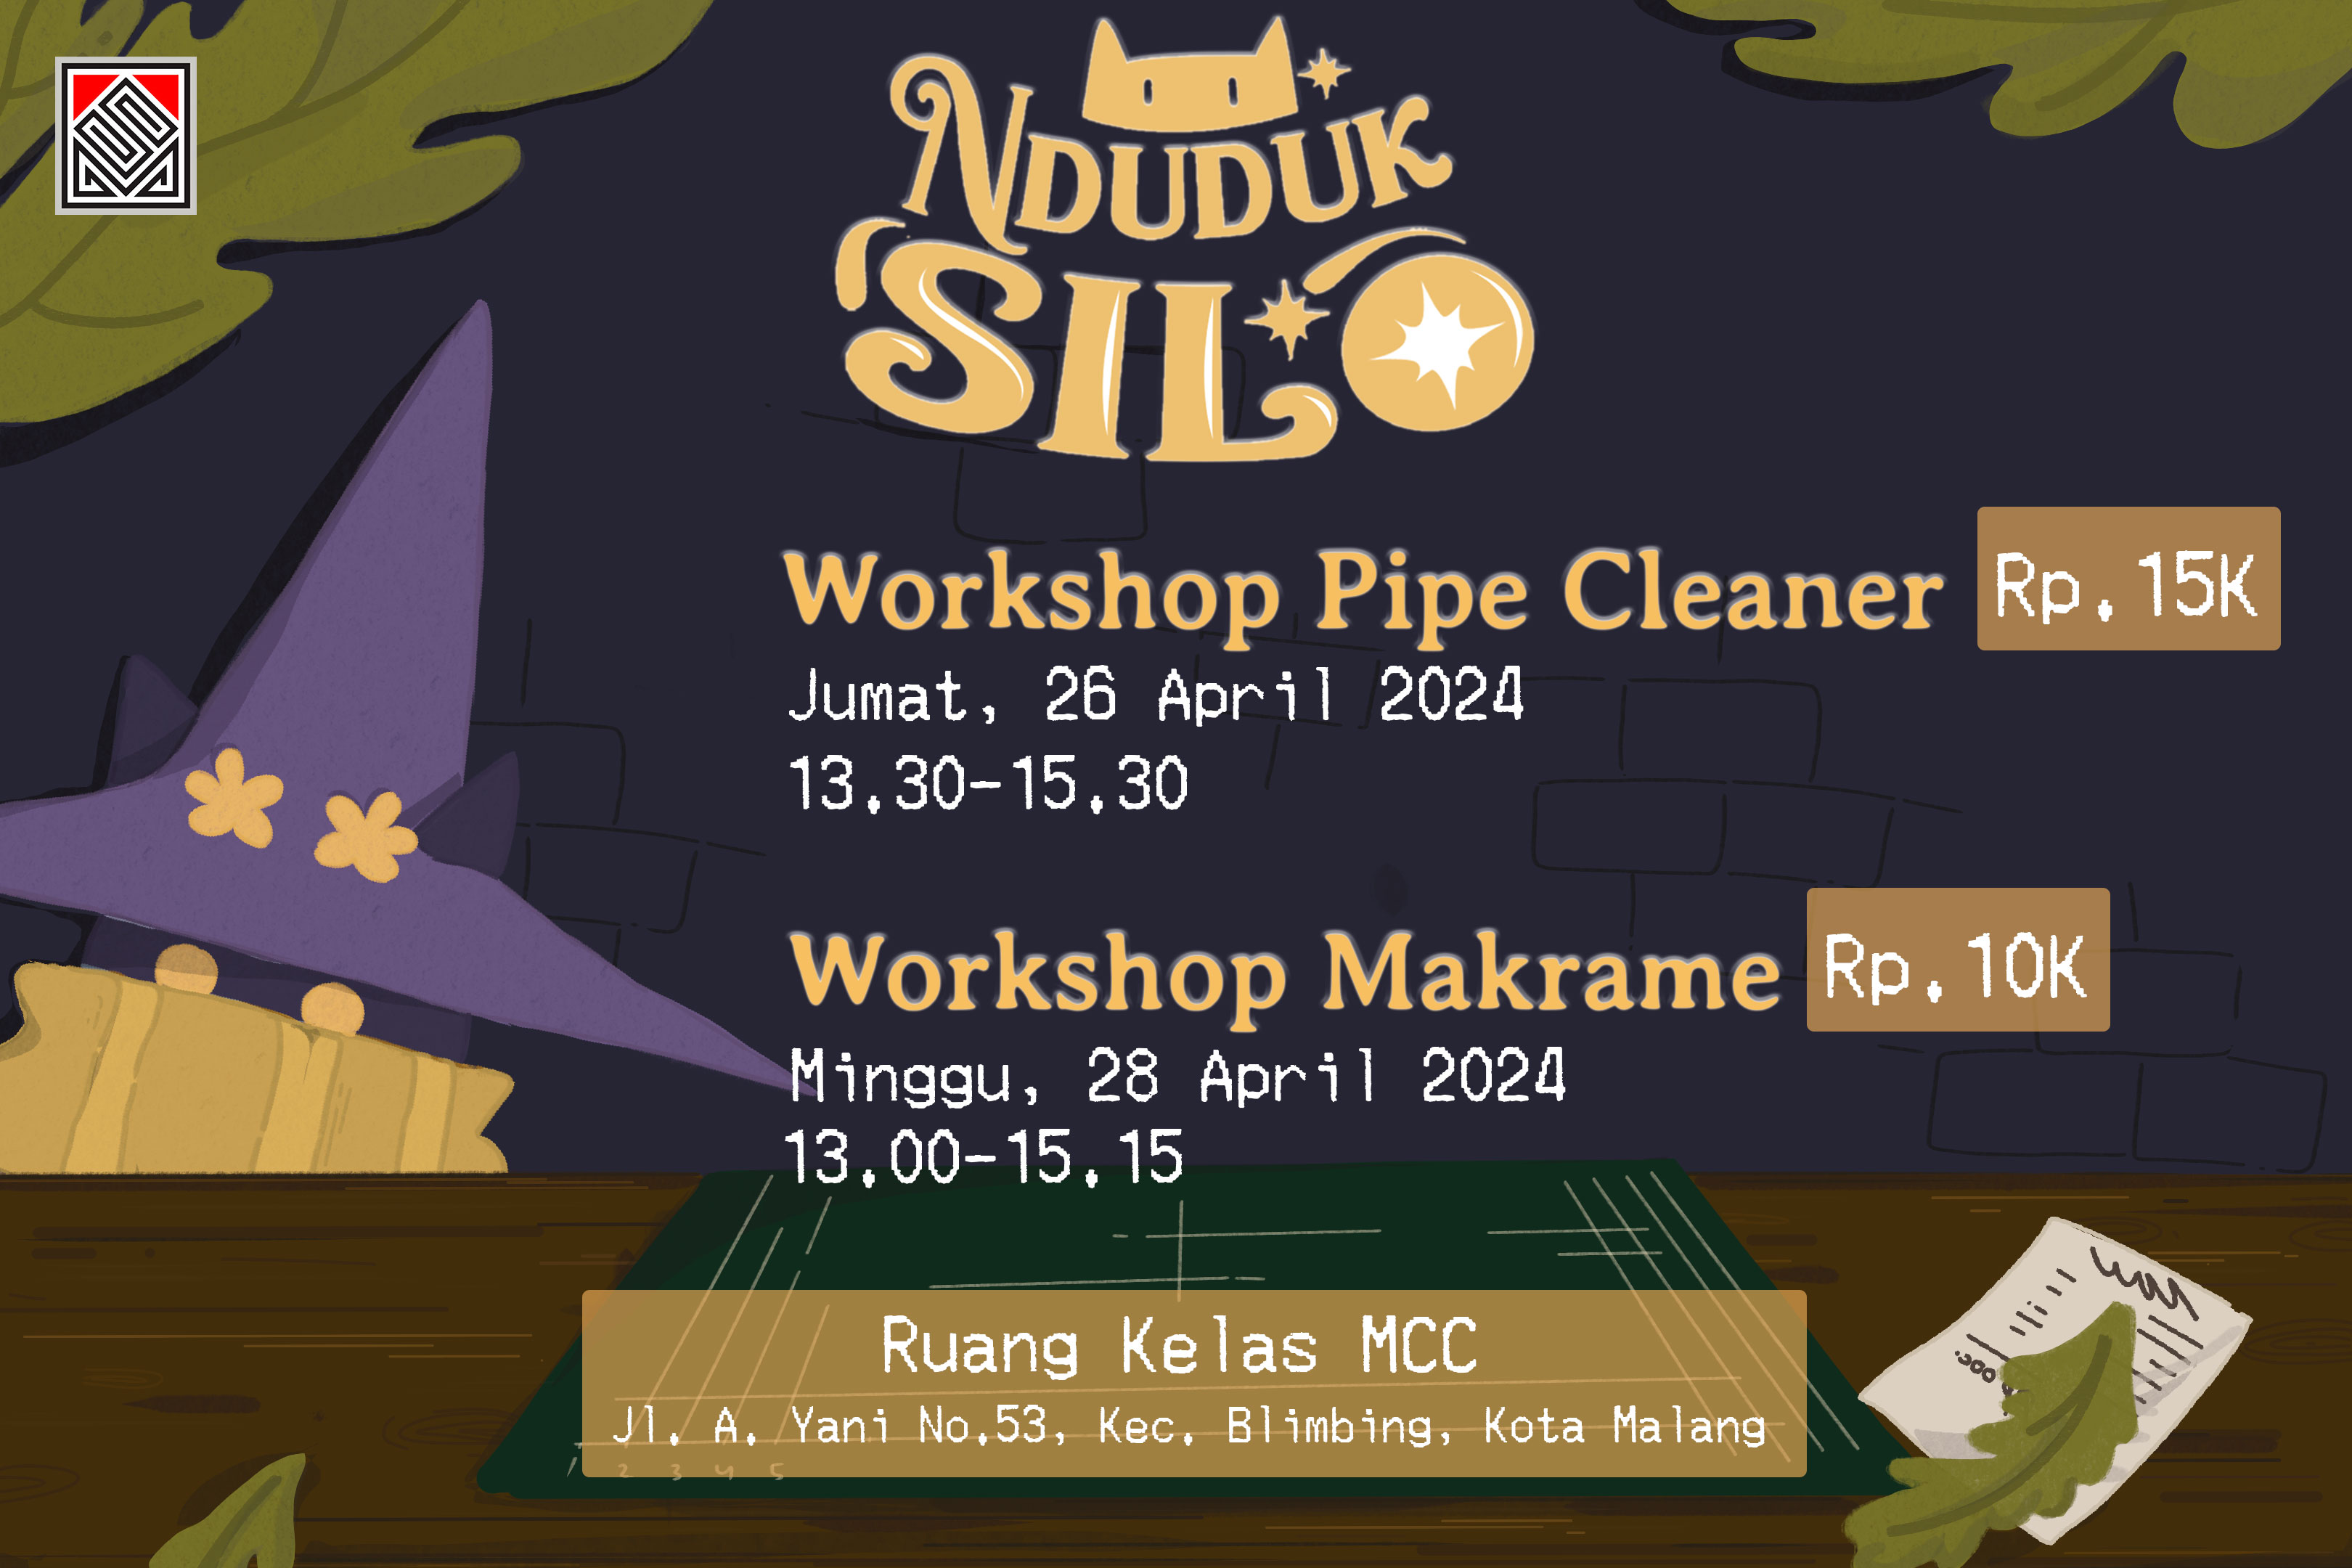 Workshop makrame, sub acara pameran NDUDUK SILO 